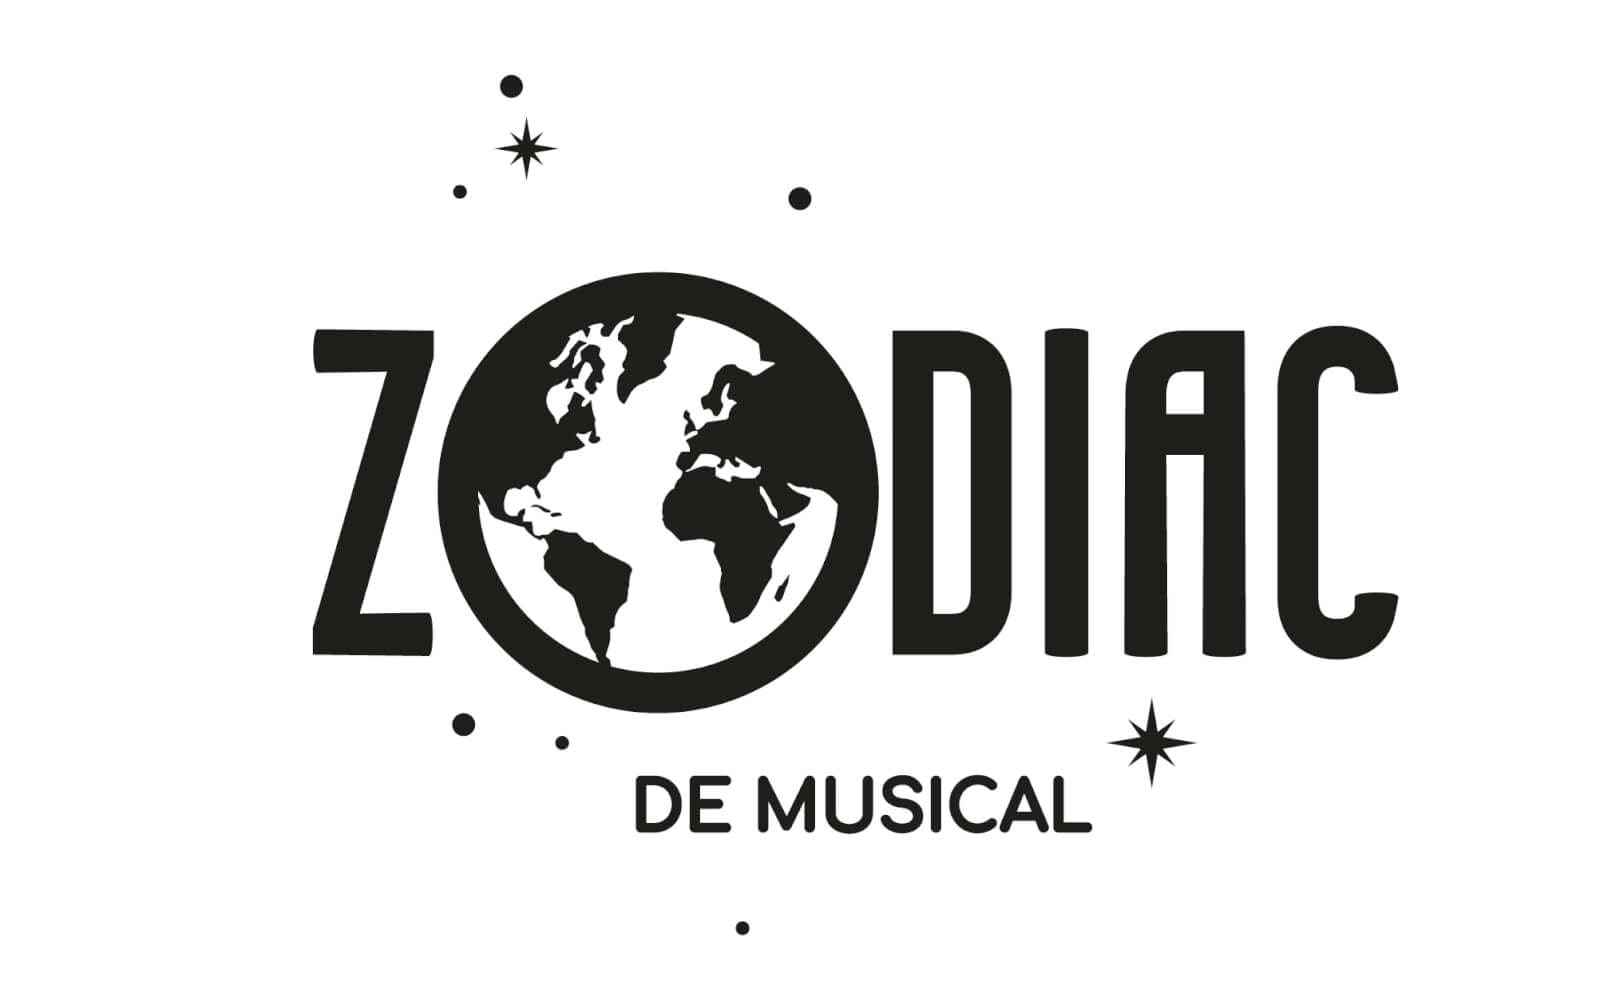 2 Rang 2 tickets voor ZODIAC de musical in de oude Koepelgevangenis in Breda!